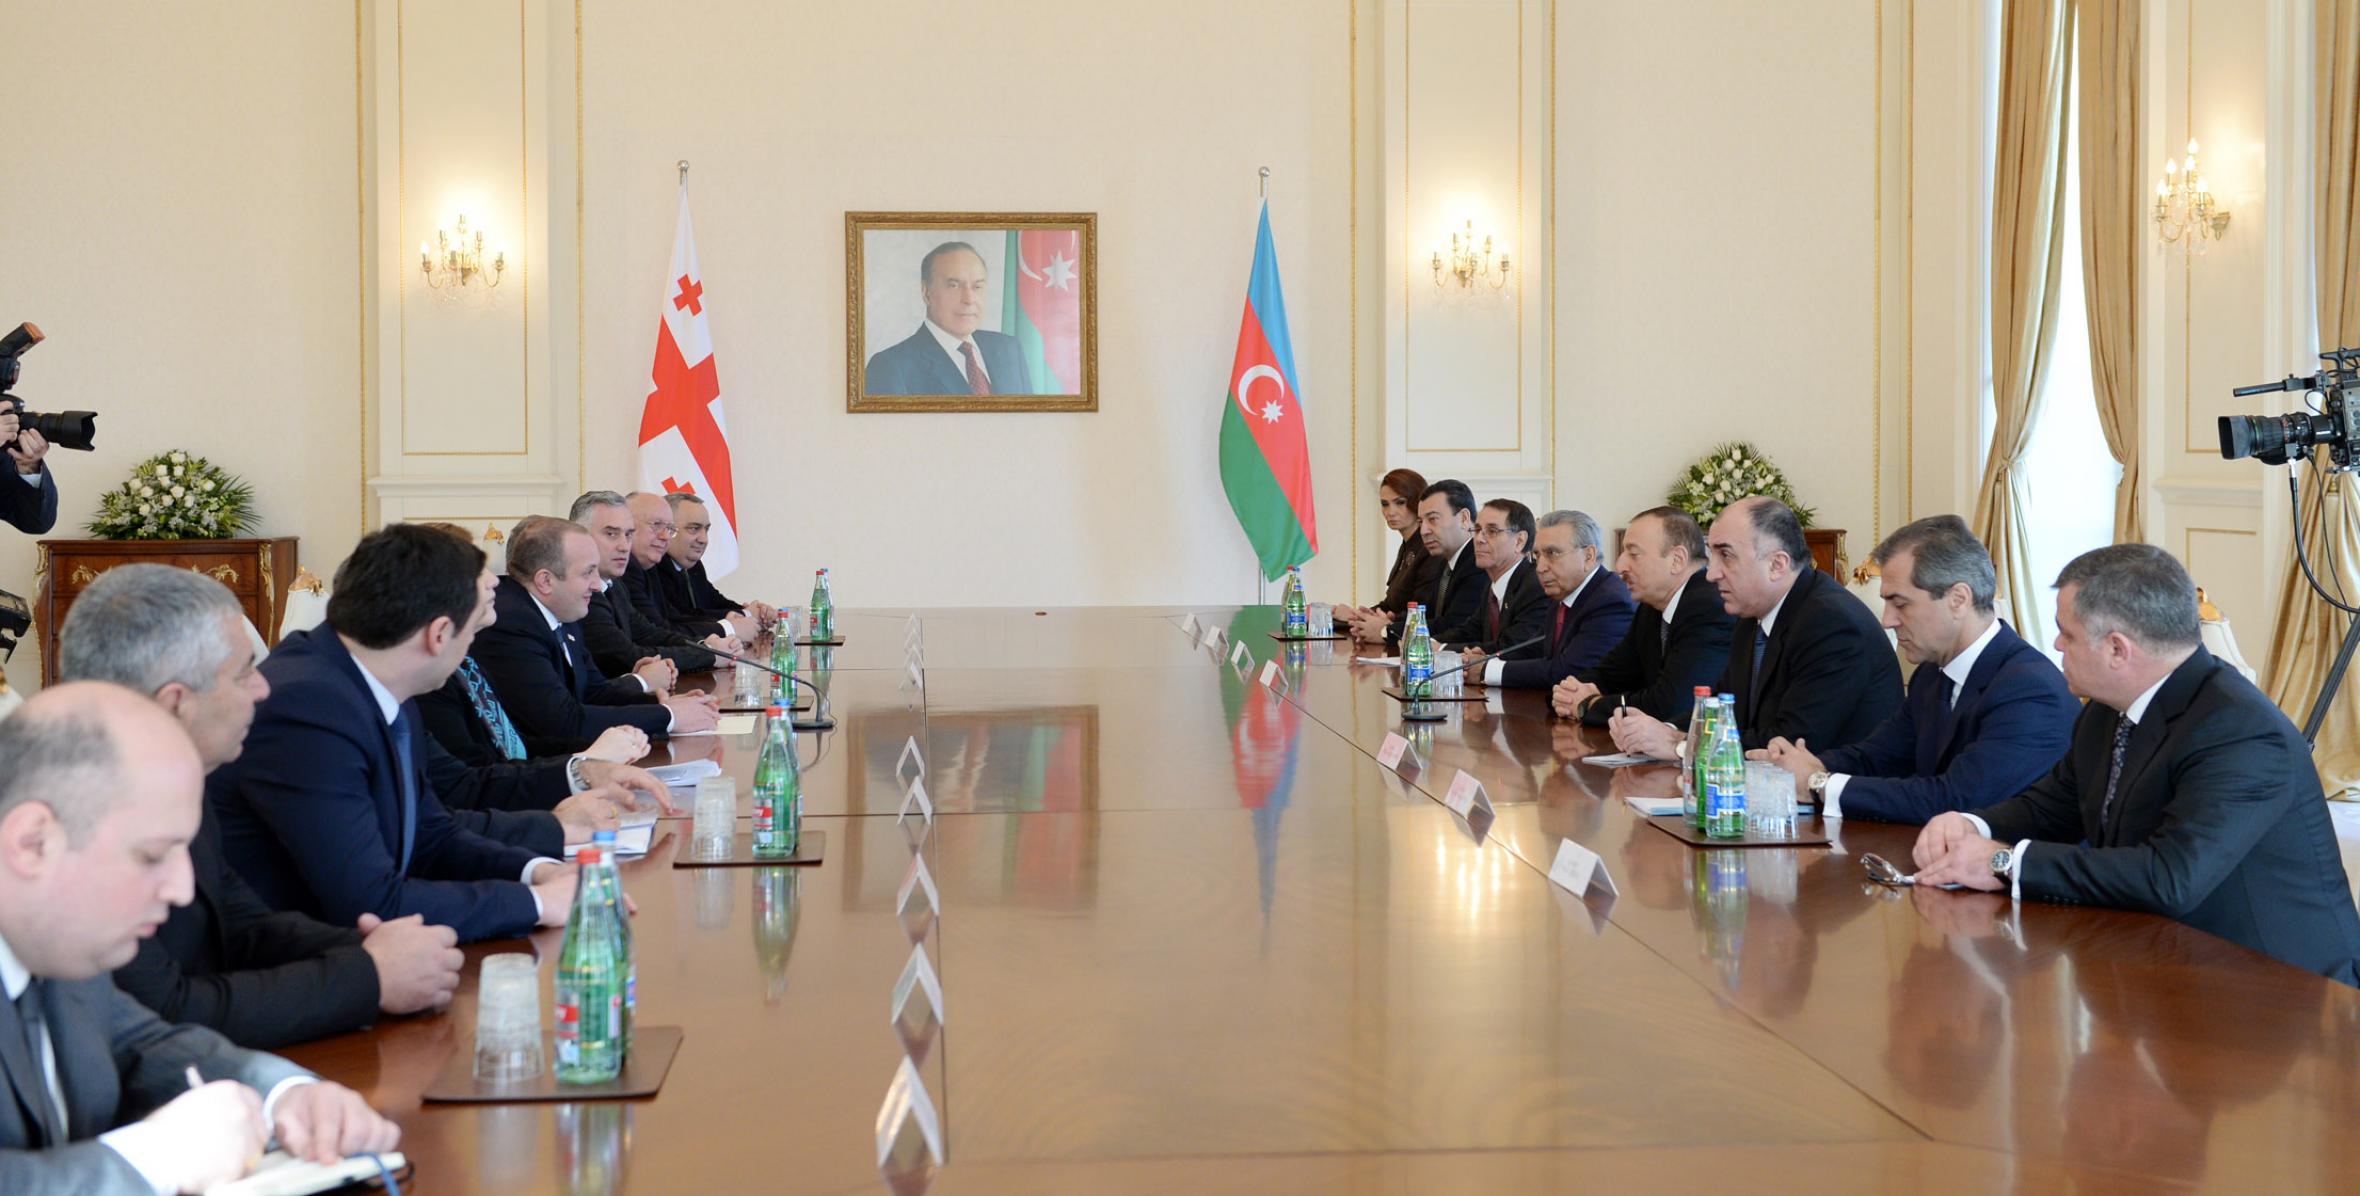 Состоялась встреча Ильхама Алиева и Президента Грузии Георгия Маргвелашвили в расширенном составе с участием делегаций